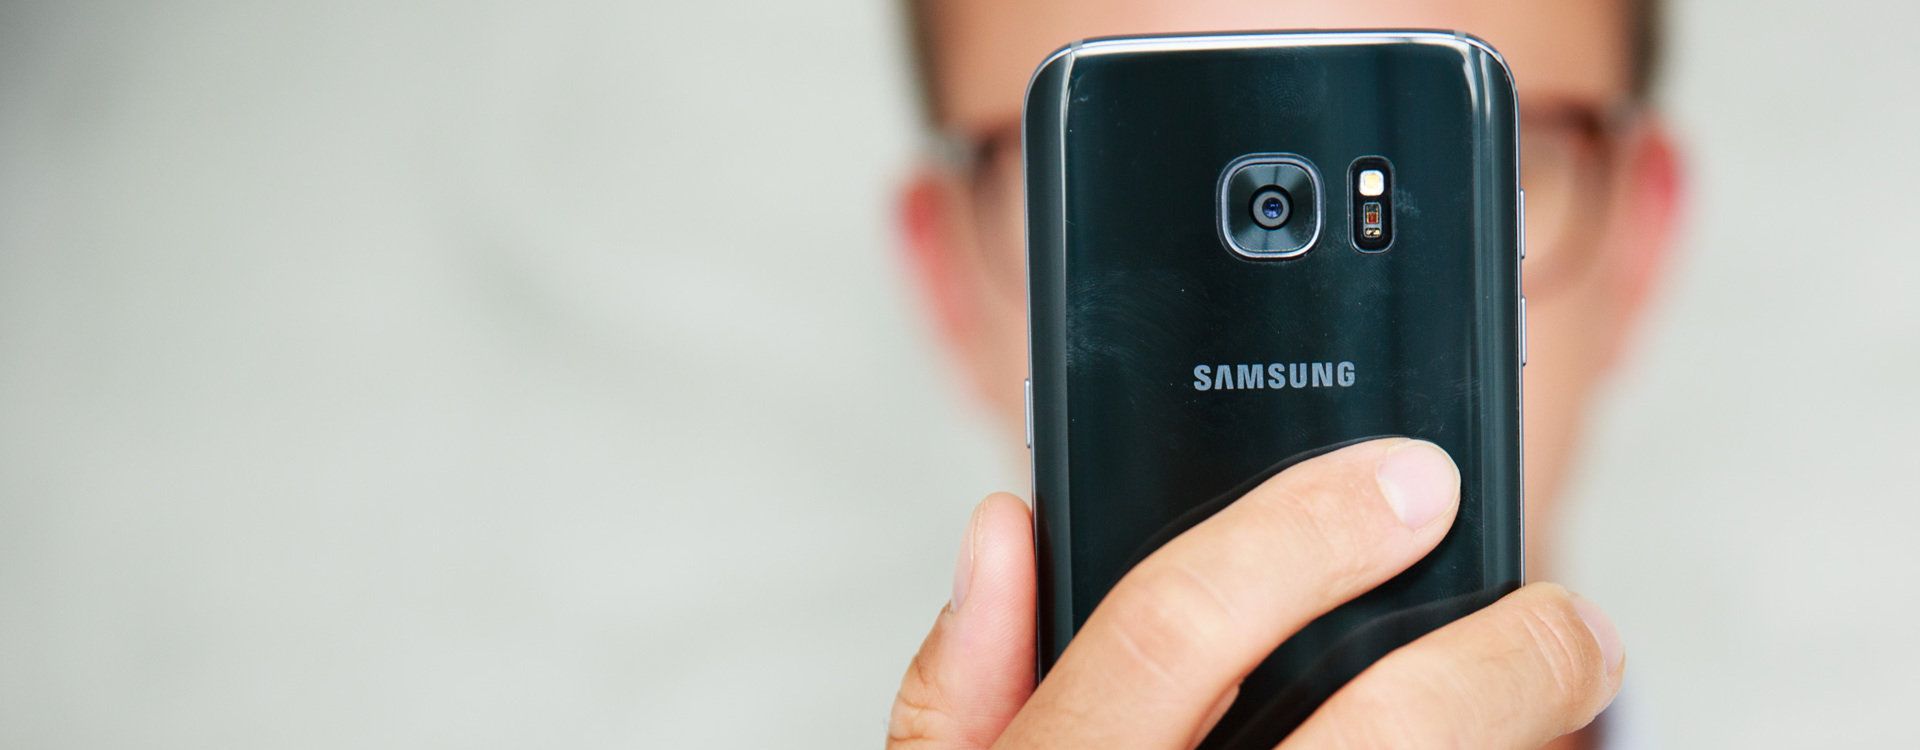 Samsung Galaxy S7 Test Aparatu W Wakacyjnej Podrozy Fotoblogia Pl